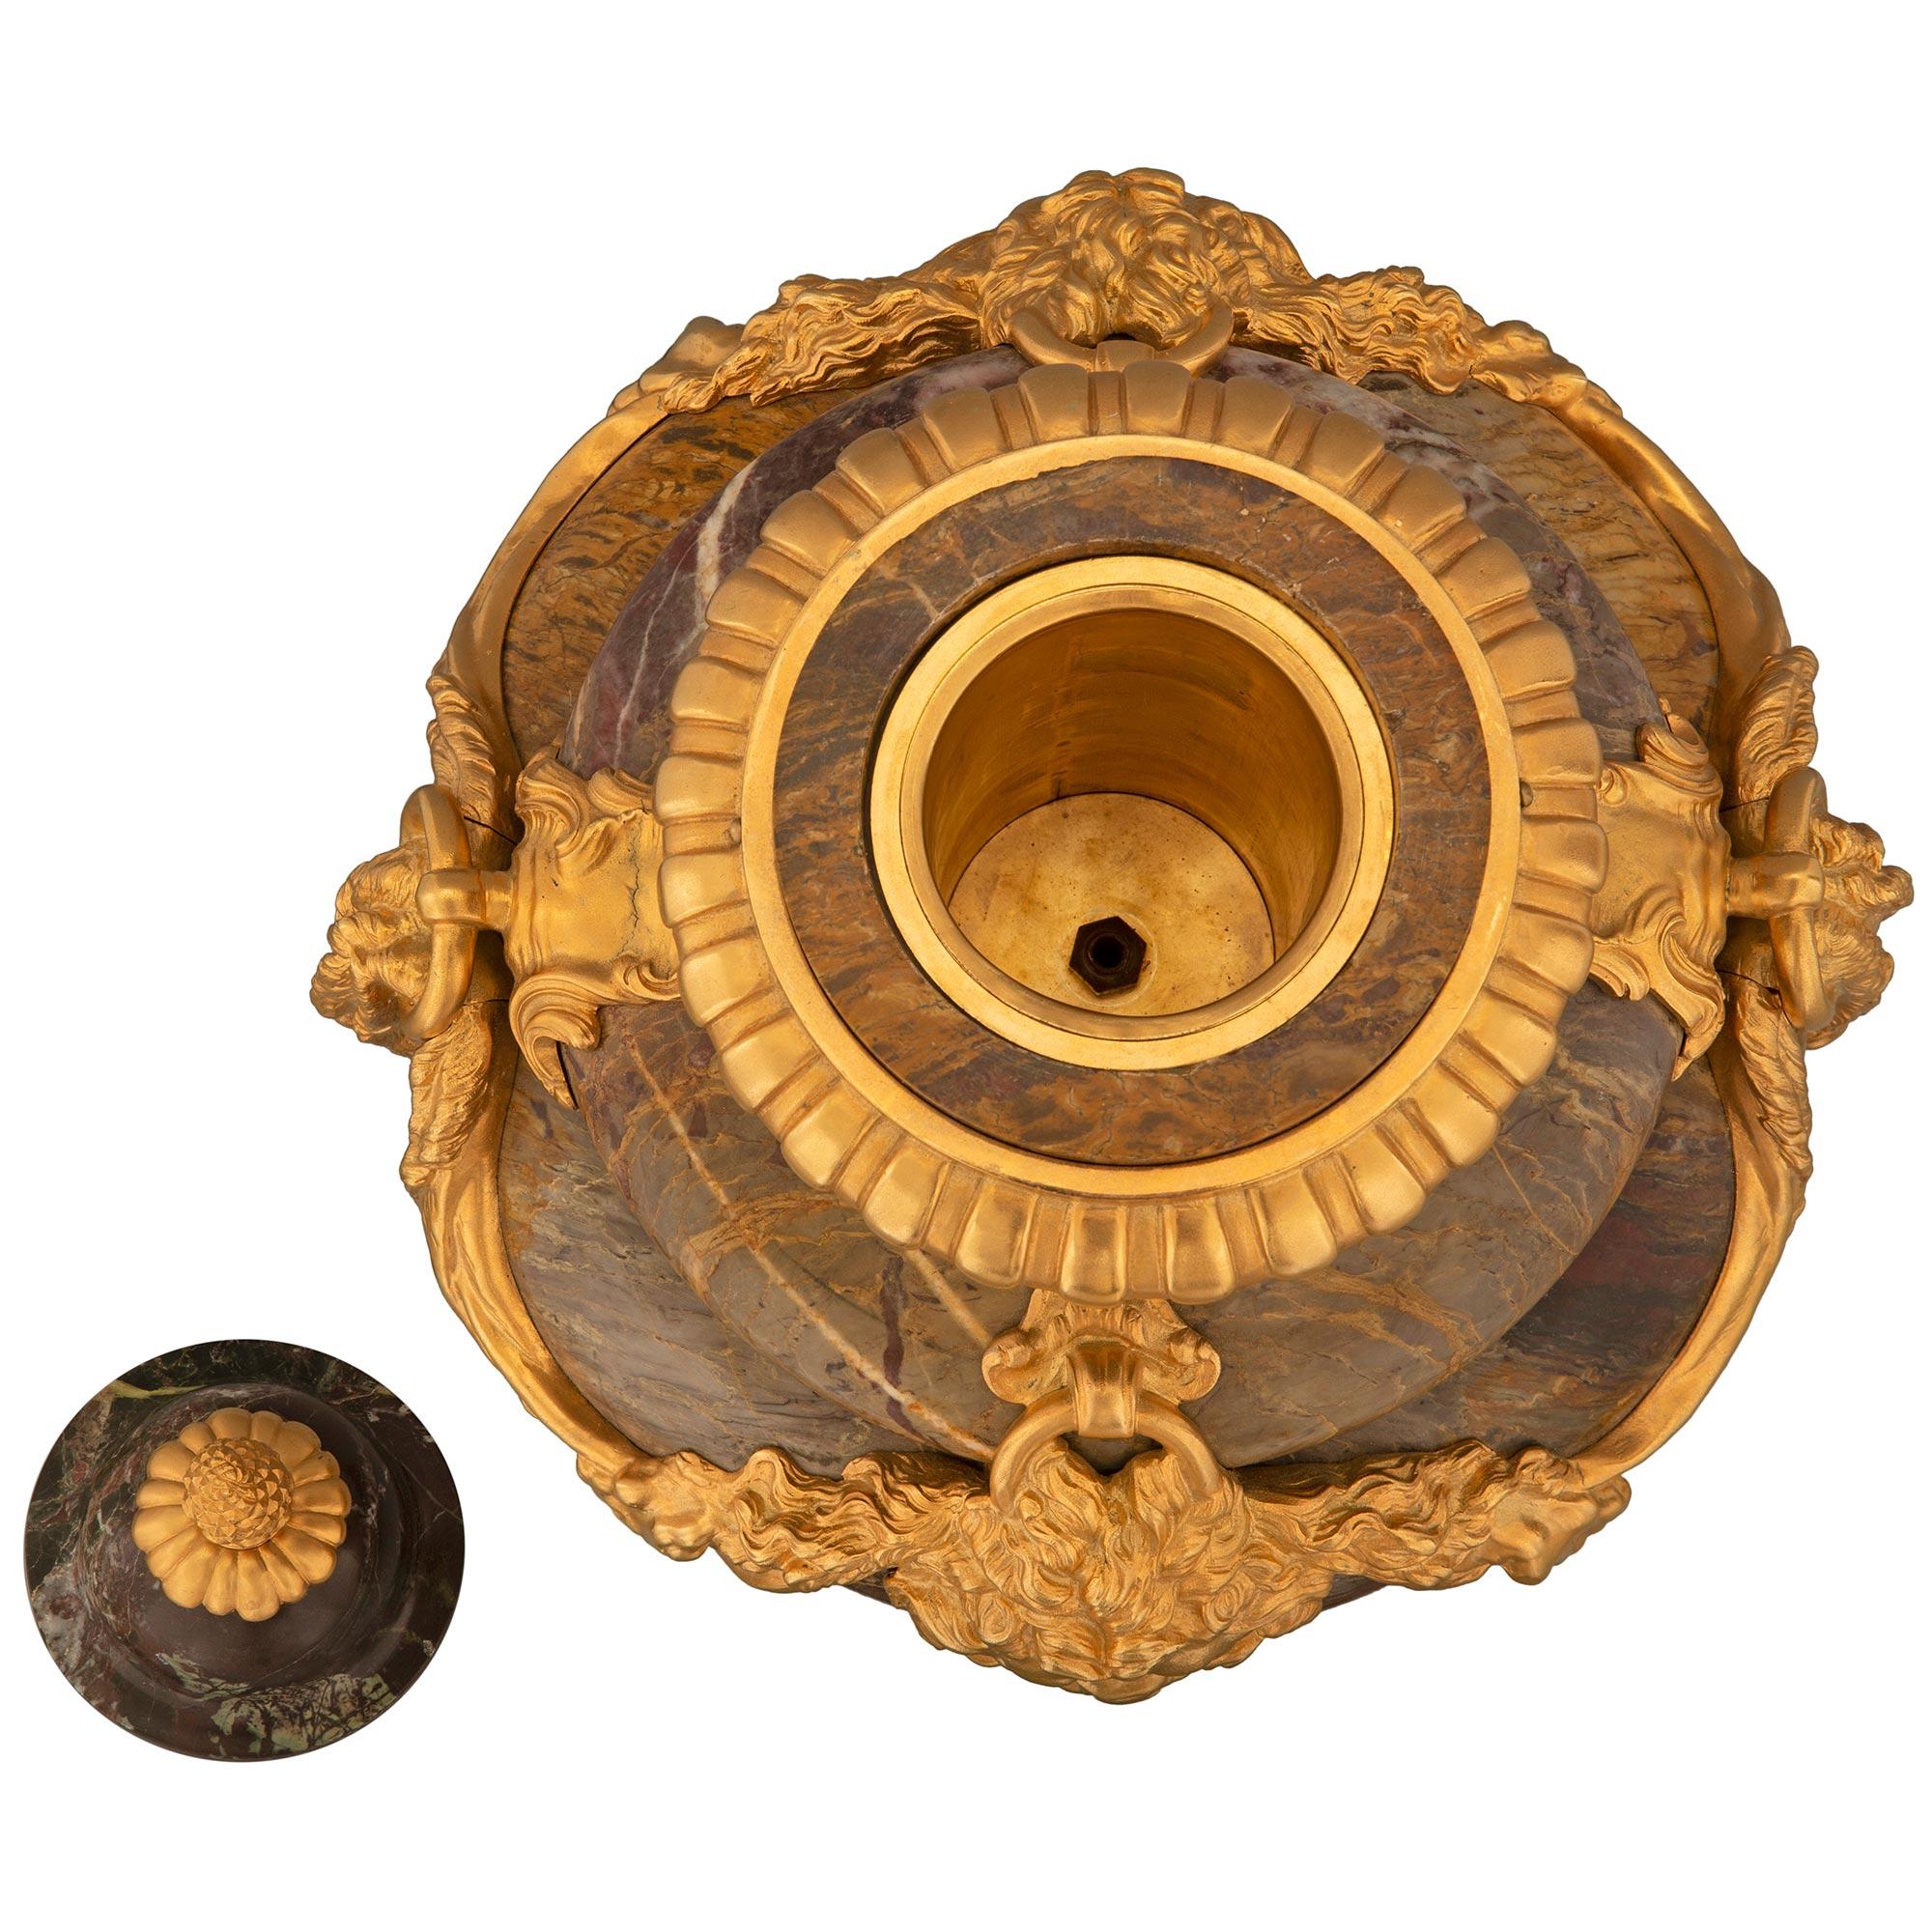 Magnifique et impressionnante paire d'urnes à couvercle en marbre de Sarrancolin et bronze doré, de style Louis XVI, datant du XIXe siècle. Chaque urne de grande taille est surmontée d'une base carrée en marbre avec un fin filet inférieur en bronze